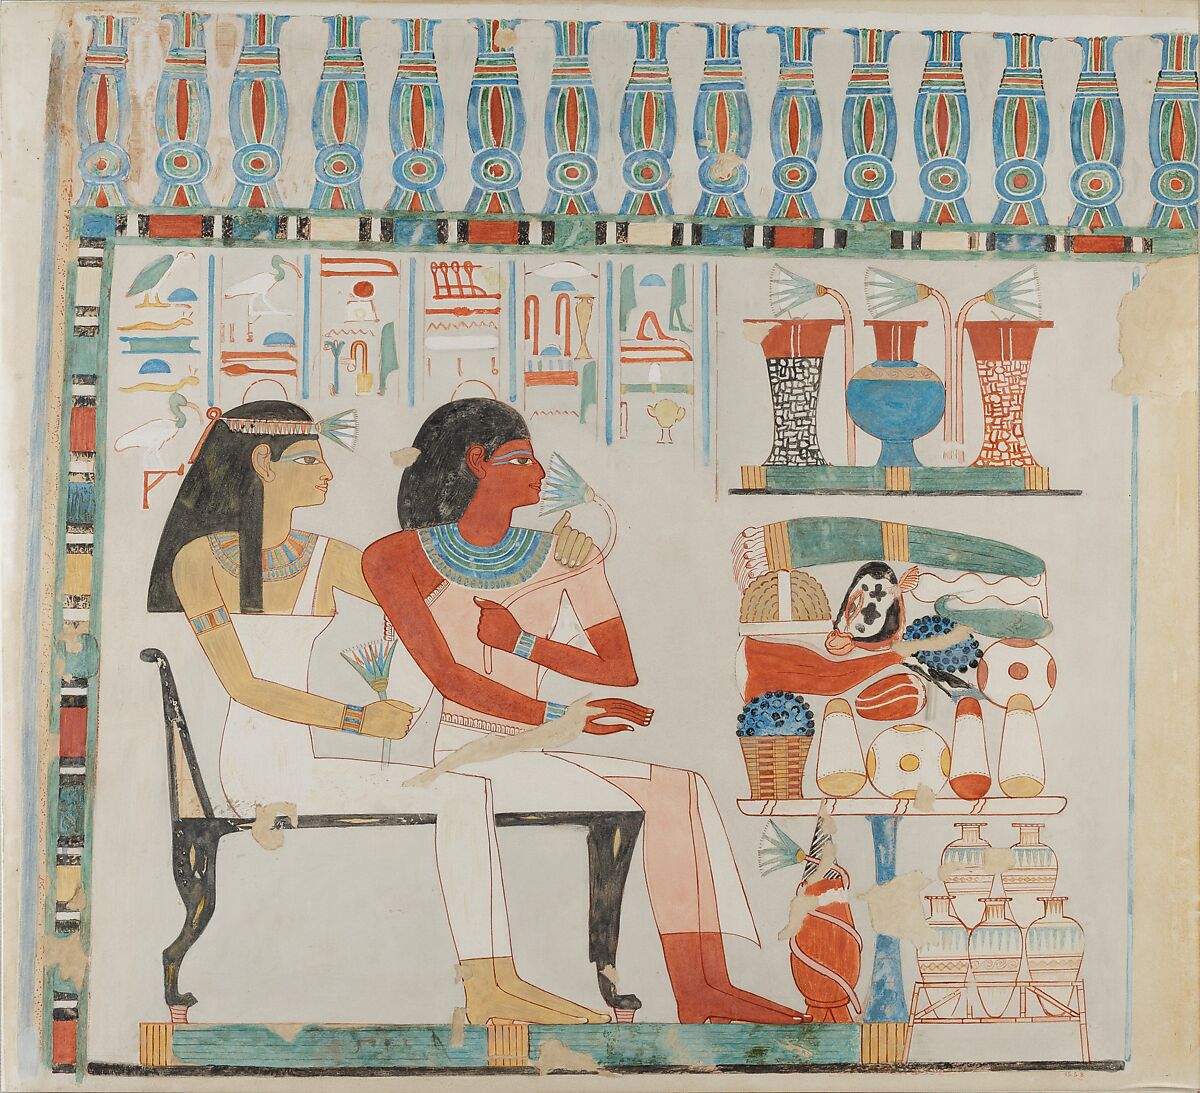 Djehuty and his Mother Receiving Offerings, Tomb of Djehuty, Norman de Garis Davies (1865–1941), Tempera on paper 